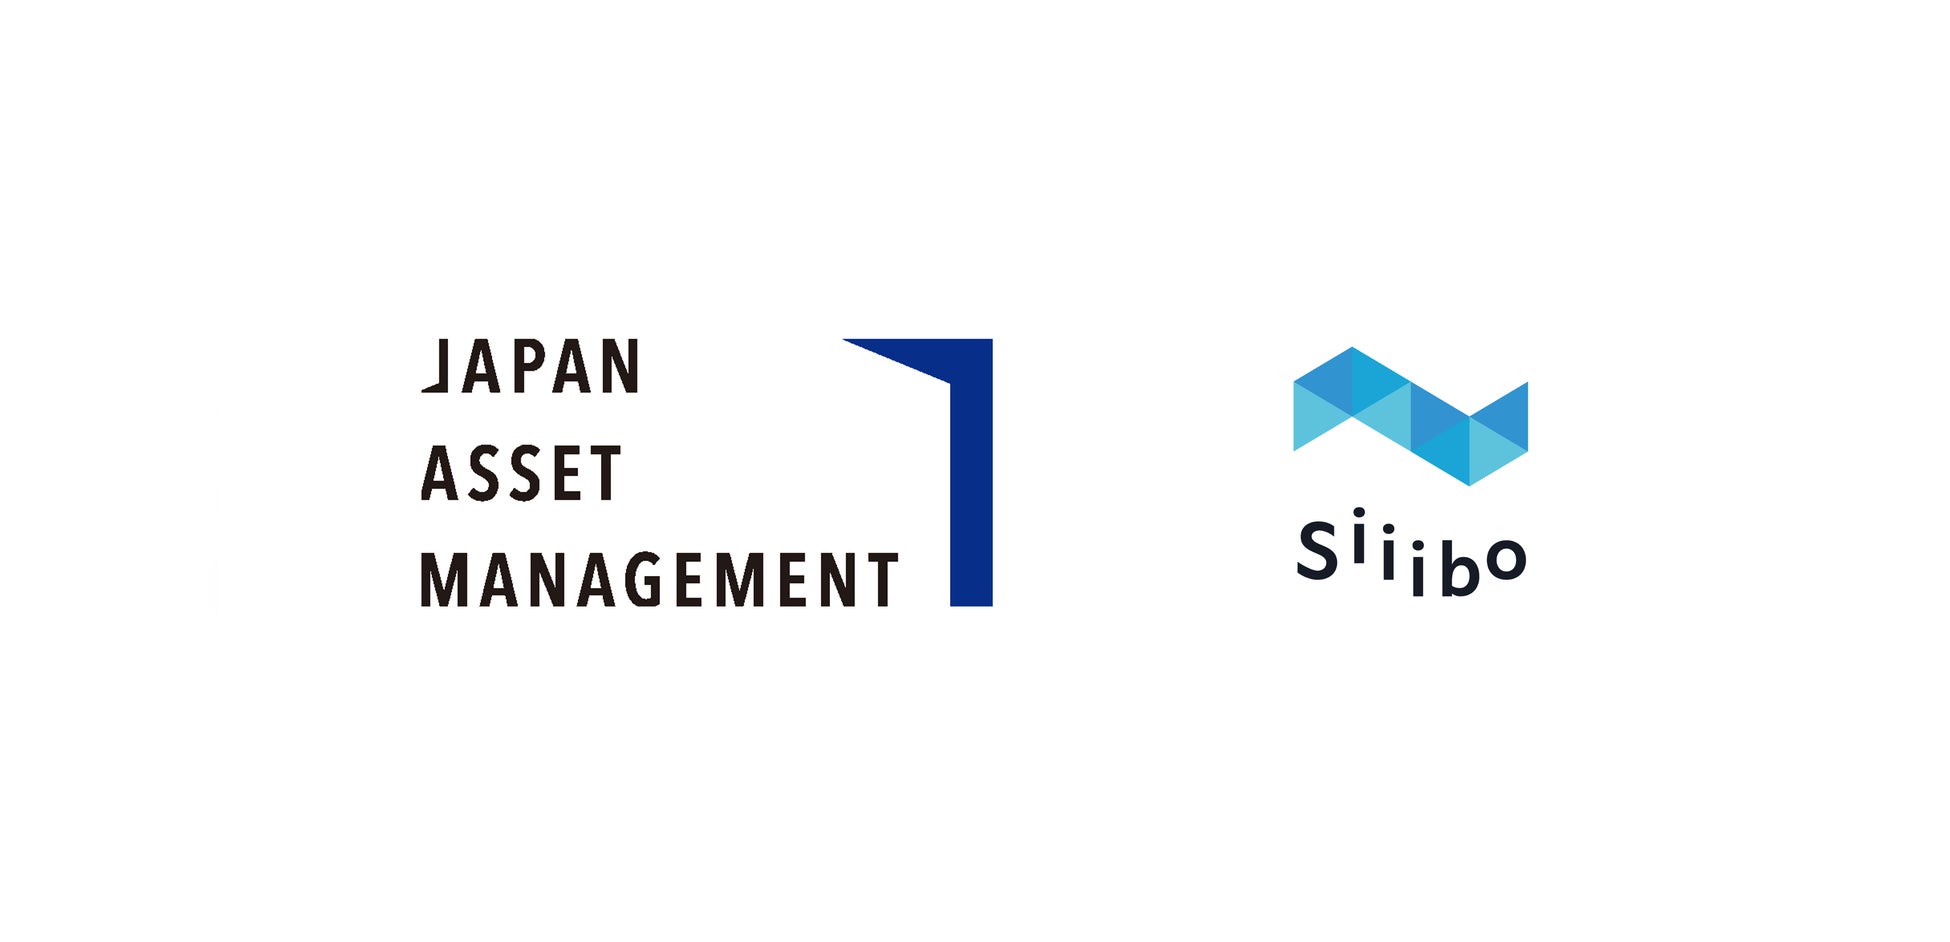 社債専門のネット証券Siiibo、IFA法人Japan Asset Managementと提携し、国内債券への投資機会を提供